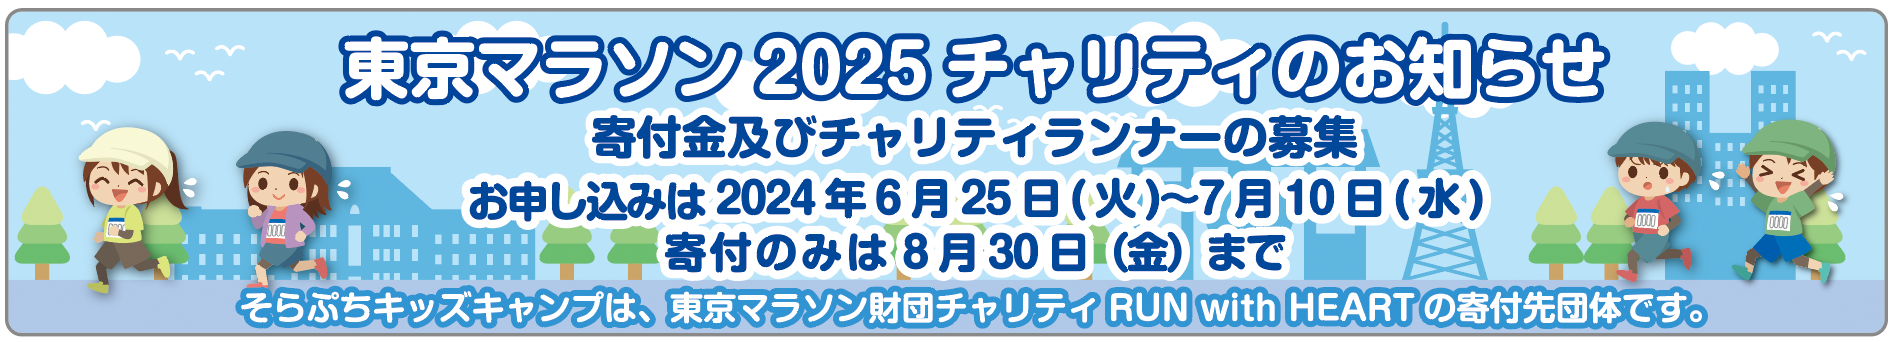 東京マラソン2025チャリティのお知らせ